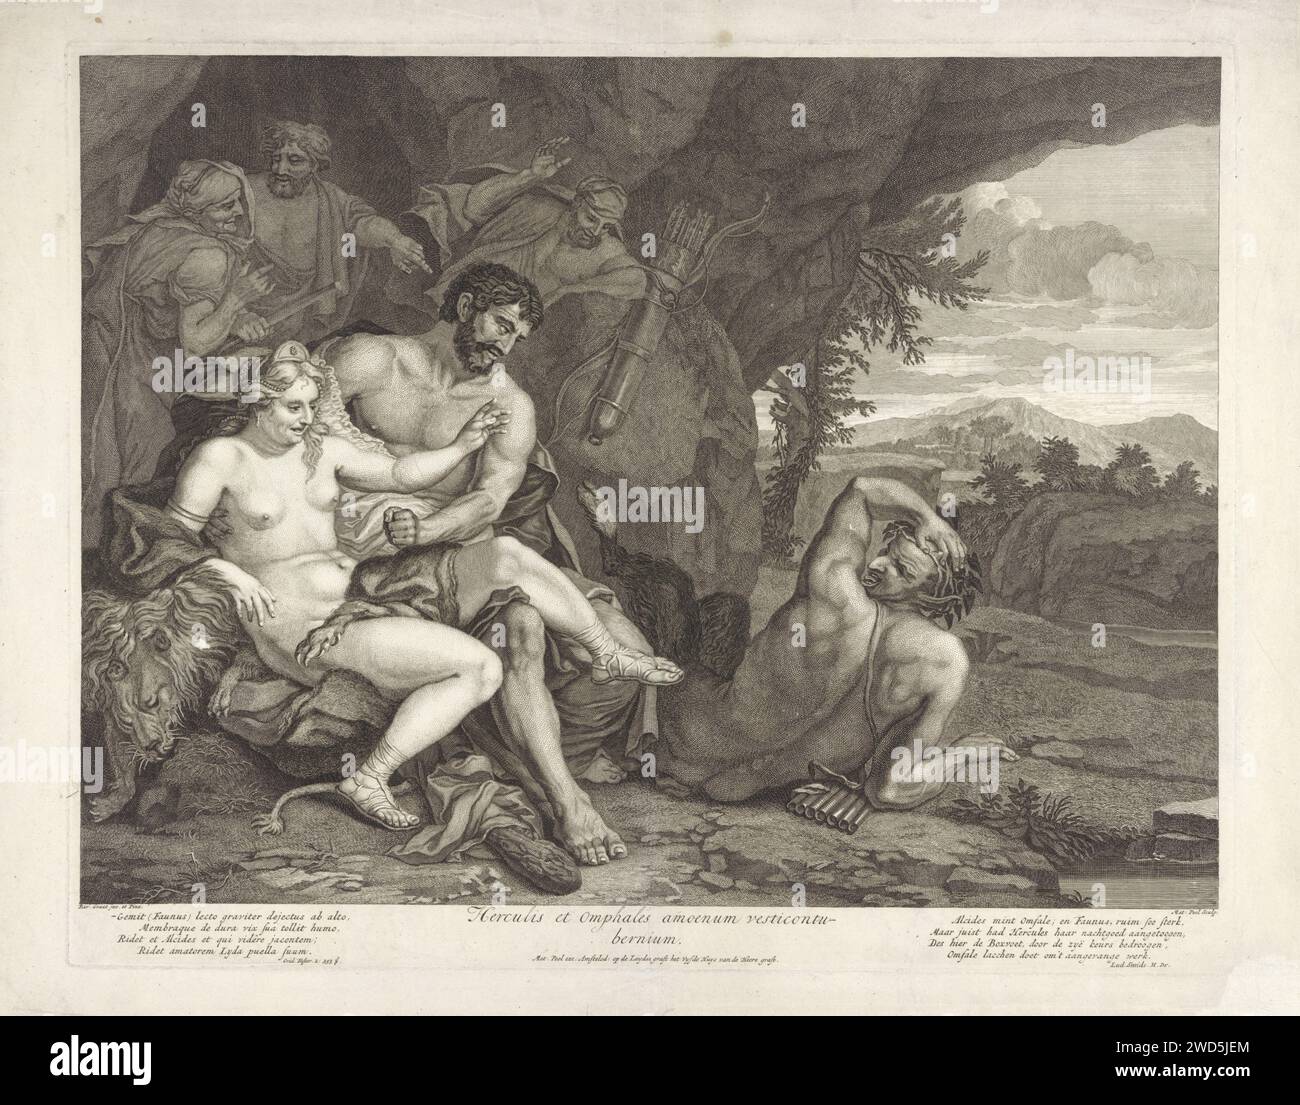 Paysage avec Hercule et Omphale, Matthijs Pool, d'après Barend Graat, 1696 - 1727 imprimer Hercule efféminé et la reine Omphale, avec les attributs d'Hercule, se caressent. PAN - qui est amoureux de la reine - est étendu sur le sol. Il vient d'être expulsé par Hercule. Les serviteurs Omphales sont précipités en arrière-plan. Amsterdam papier gravure / gravure Hercules, en vêtement féminin, donne un coup de pied à Pan du lit d'Omphale Banque D'Images